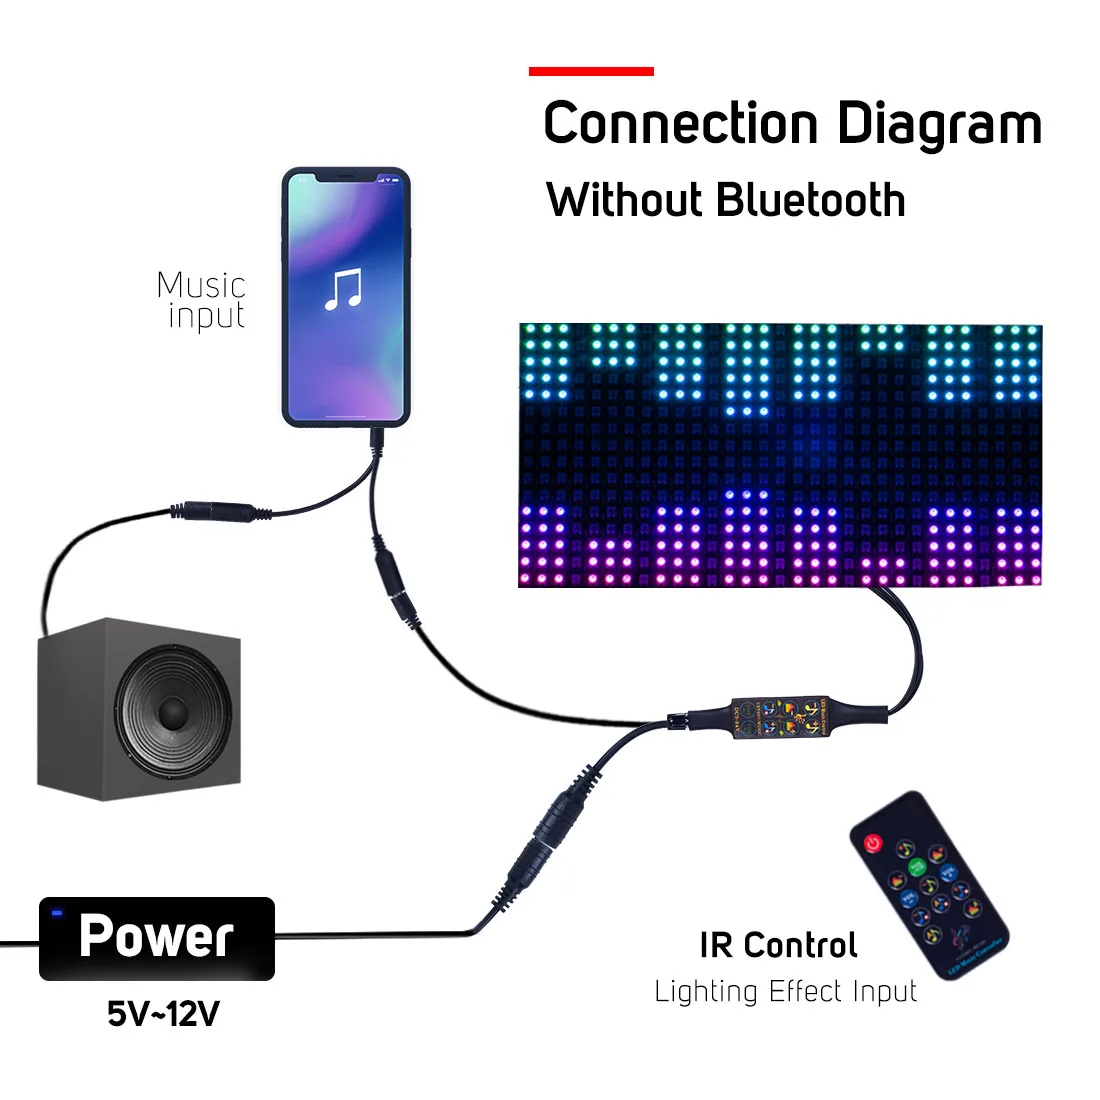 DC5-24V работы при прослушивании музыки по Bluetooth WS2812B WS2811 мечта контроллер ИК/RF с микрофоном 13 кнопок пульта дистанционного управления, светодиодные ленты матрица Панель 512 Пиксели